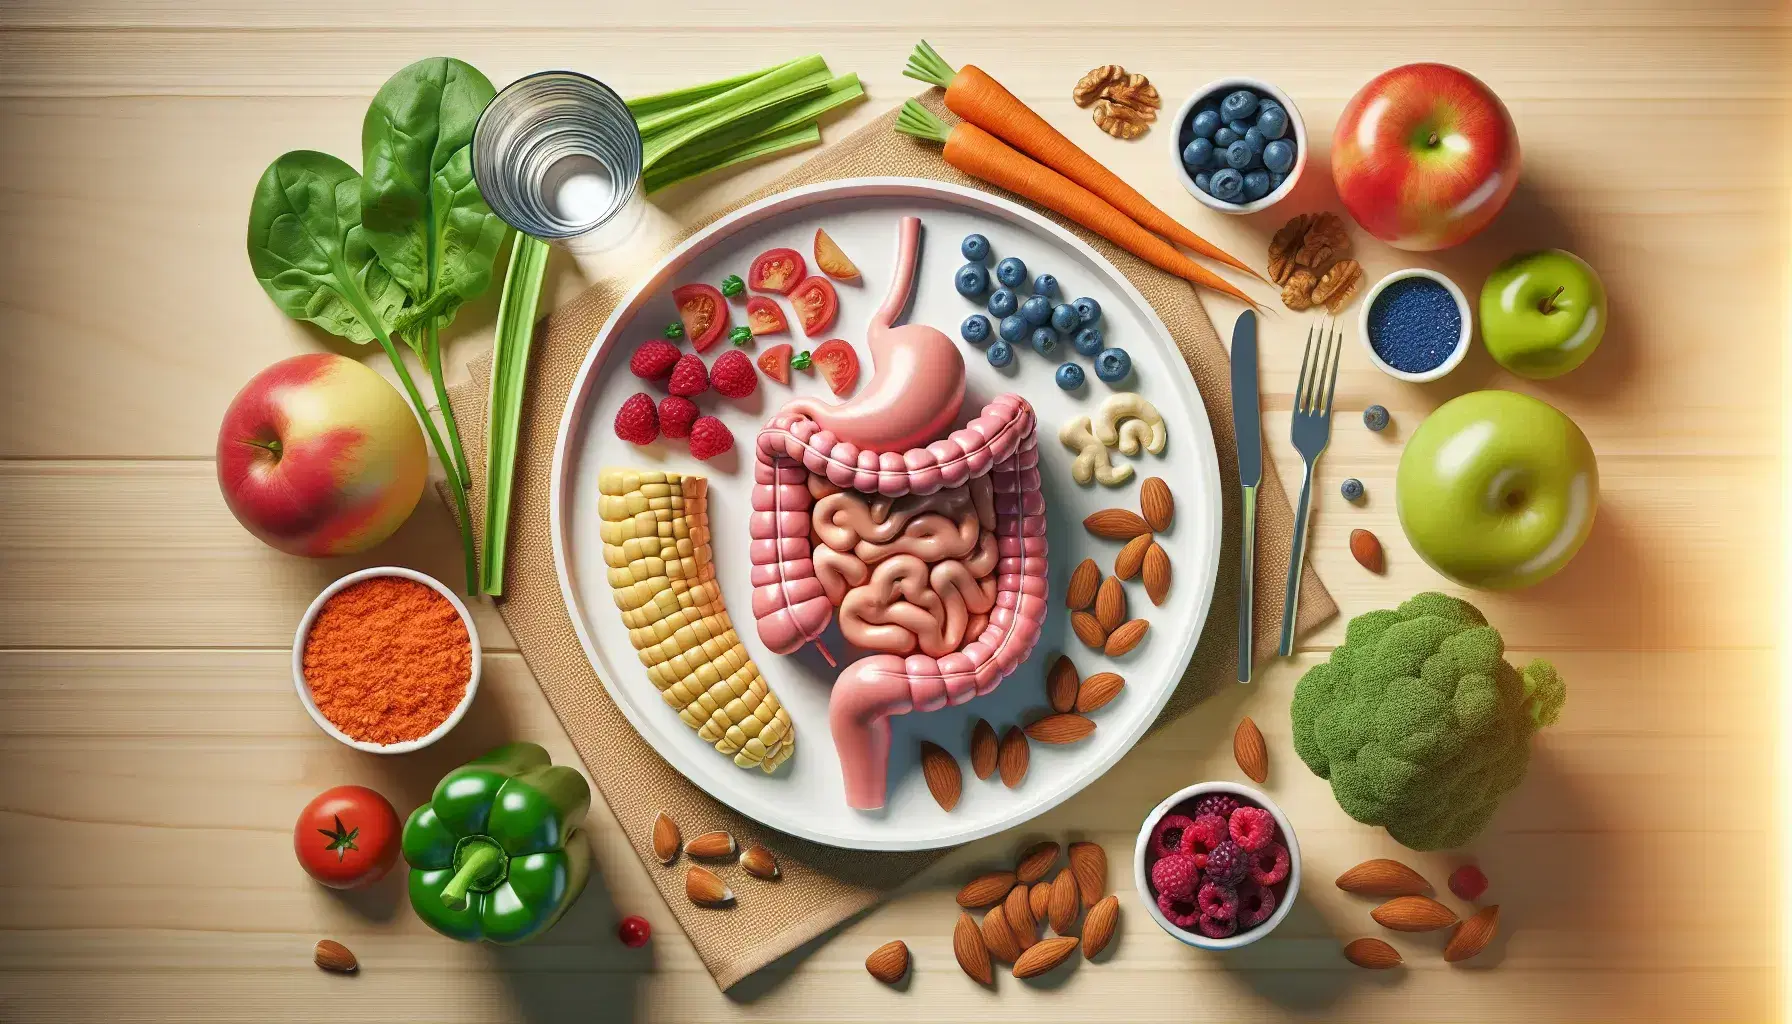 Vista superior de una mesa con alimentos saludables y modelo anatómico del sistema digestivo humano en un plato, rodeado de espinacas, zanahorias, tomates, maíz, arándanos y almendras con un vaso de agua.